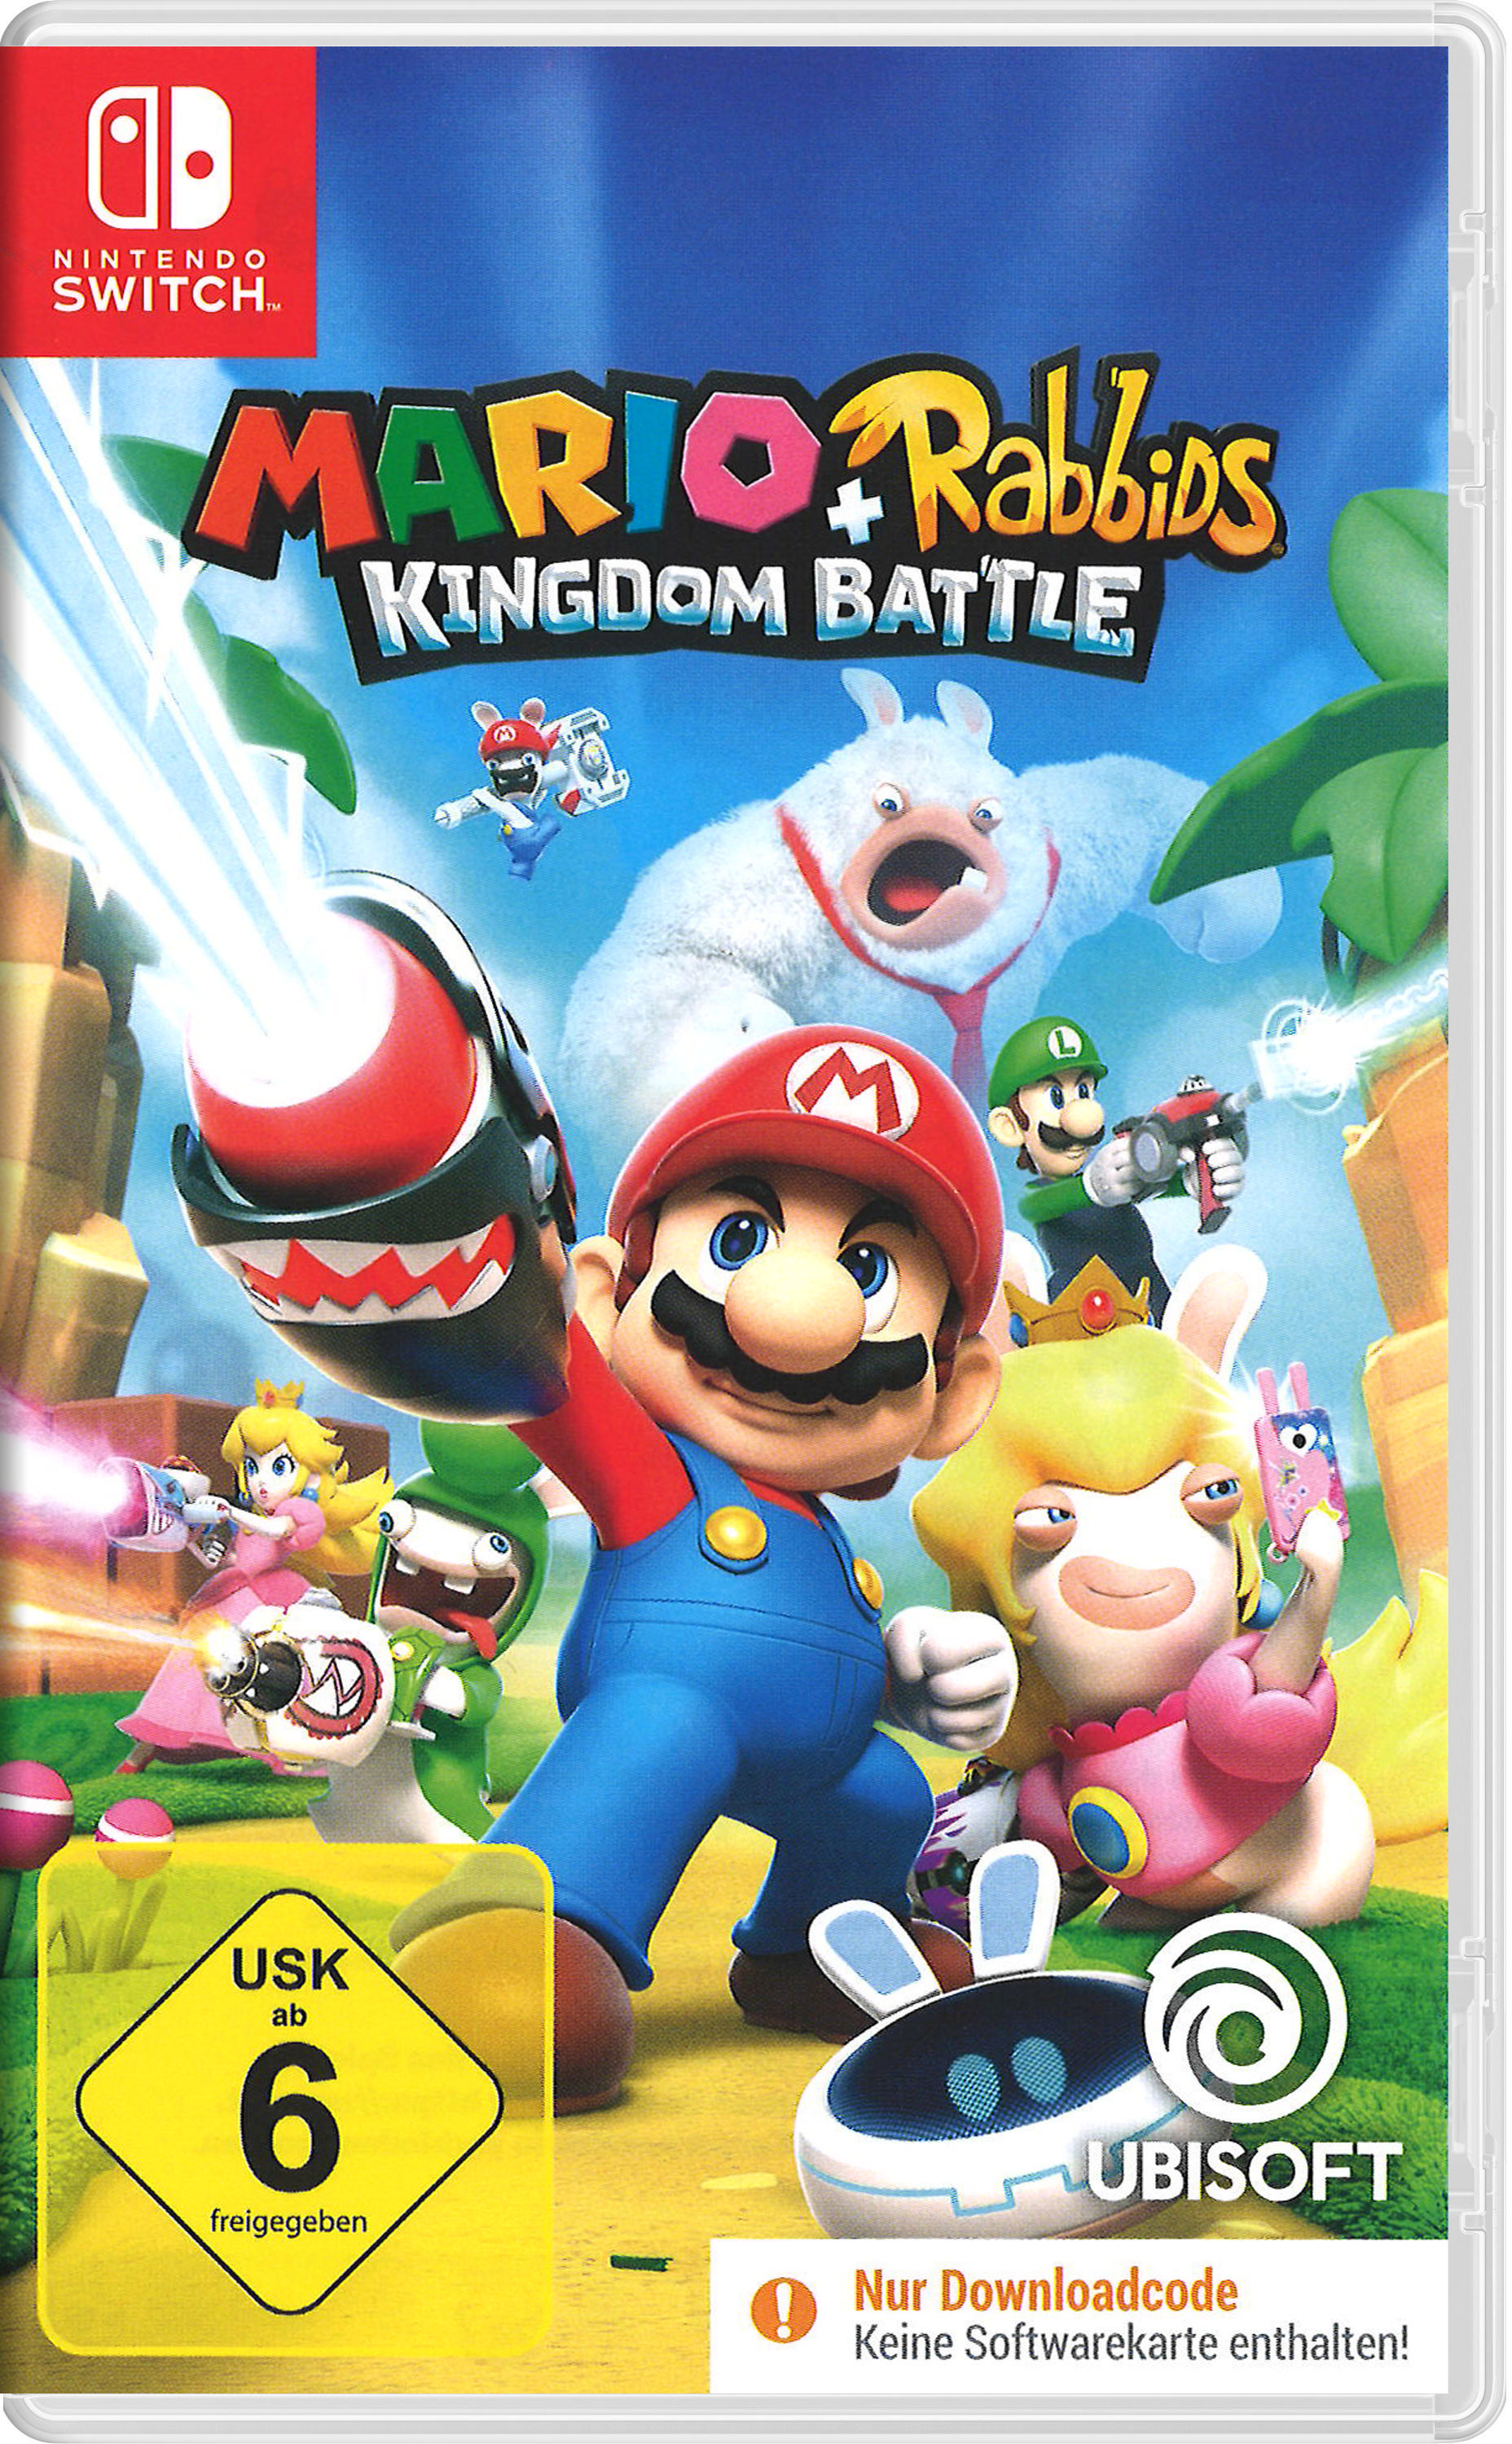 Rabbids Switch] in Box [Nintendo Battle - - Mario Code der Kingdom +